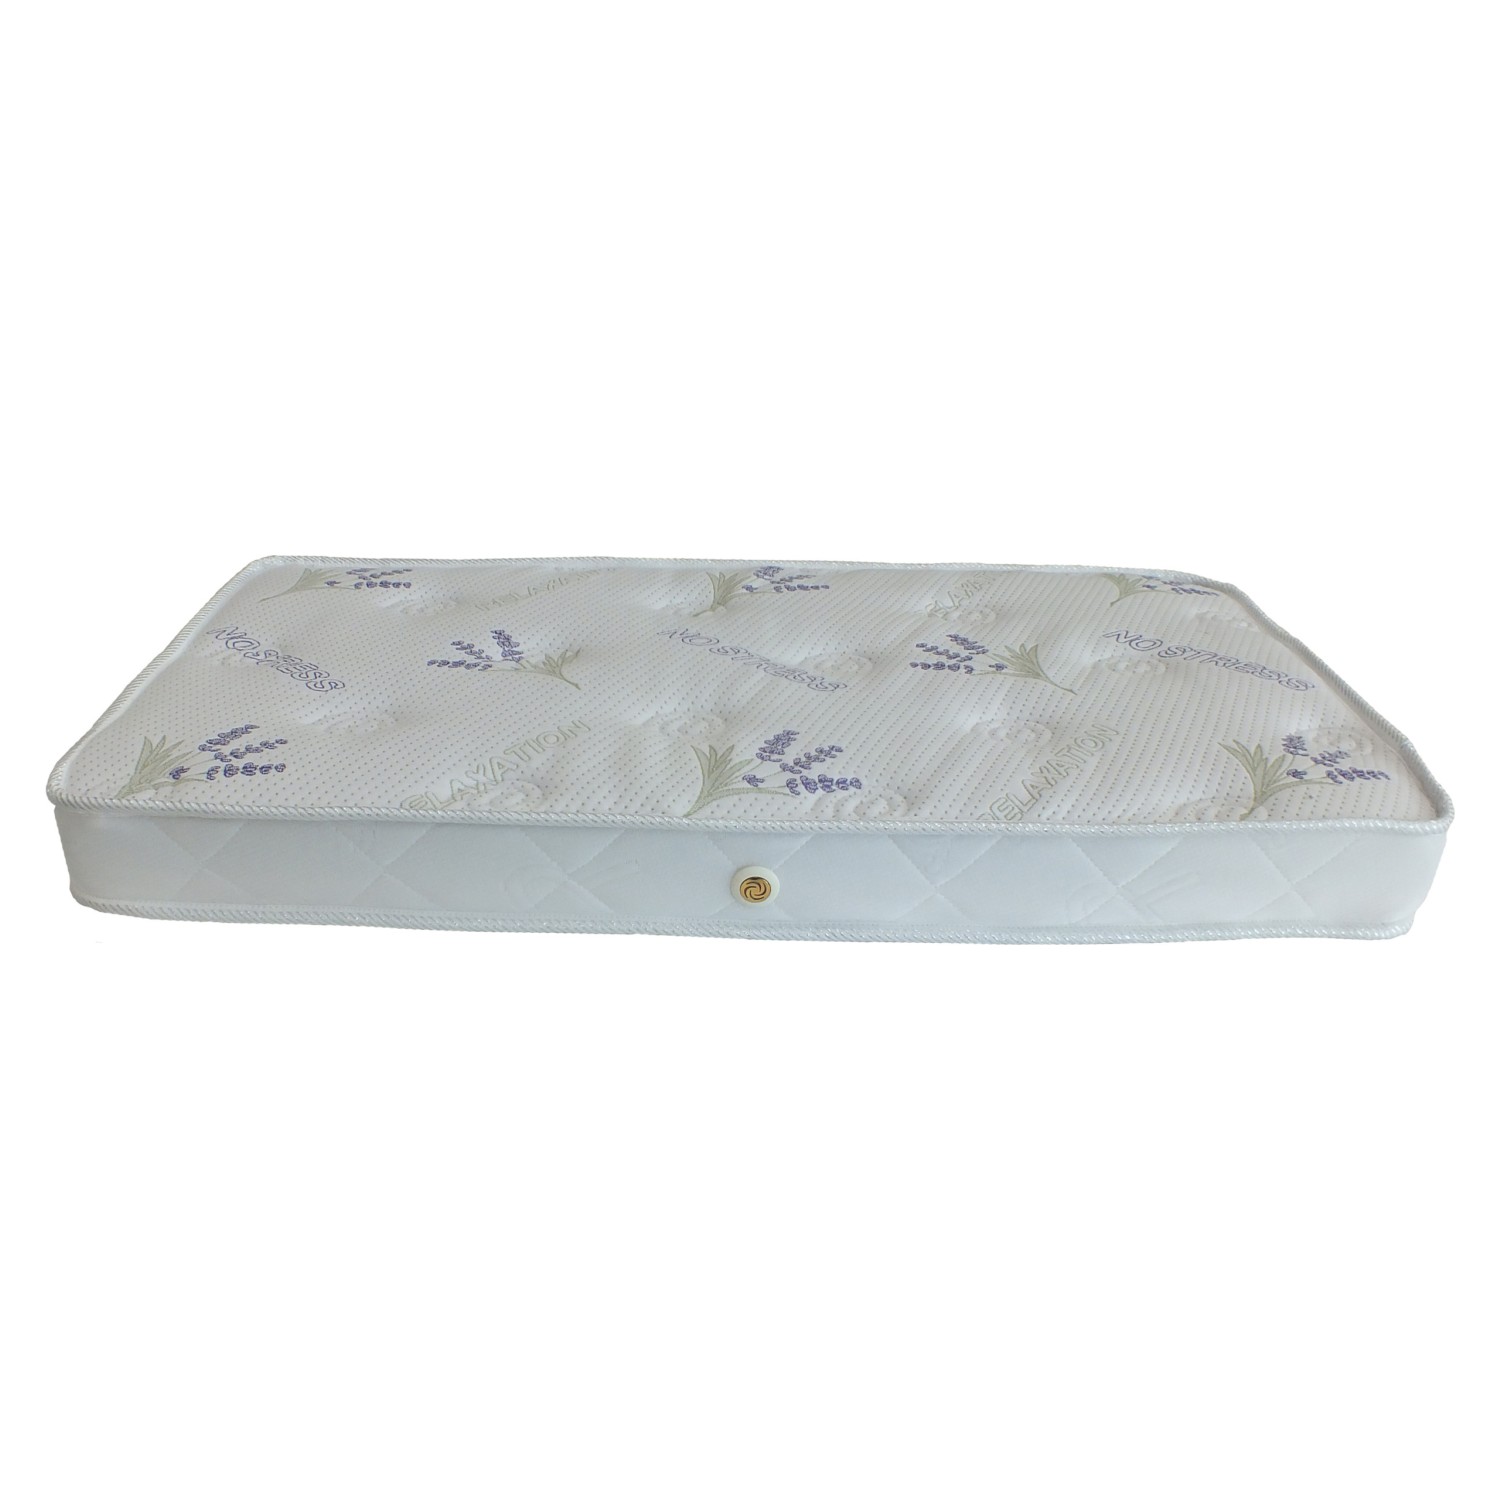 Dgs Comfort Bebek Yatağı Sünger Yatak 60X120 Fiyatı